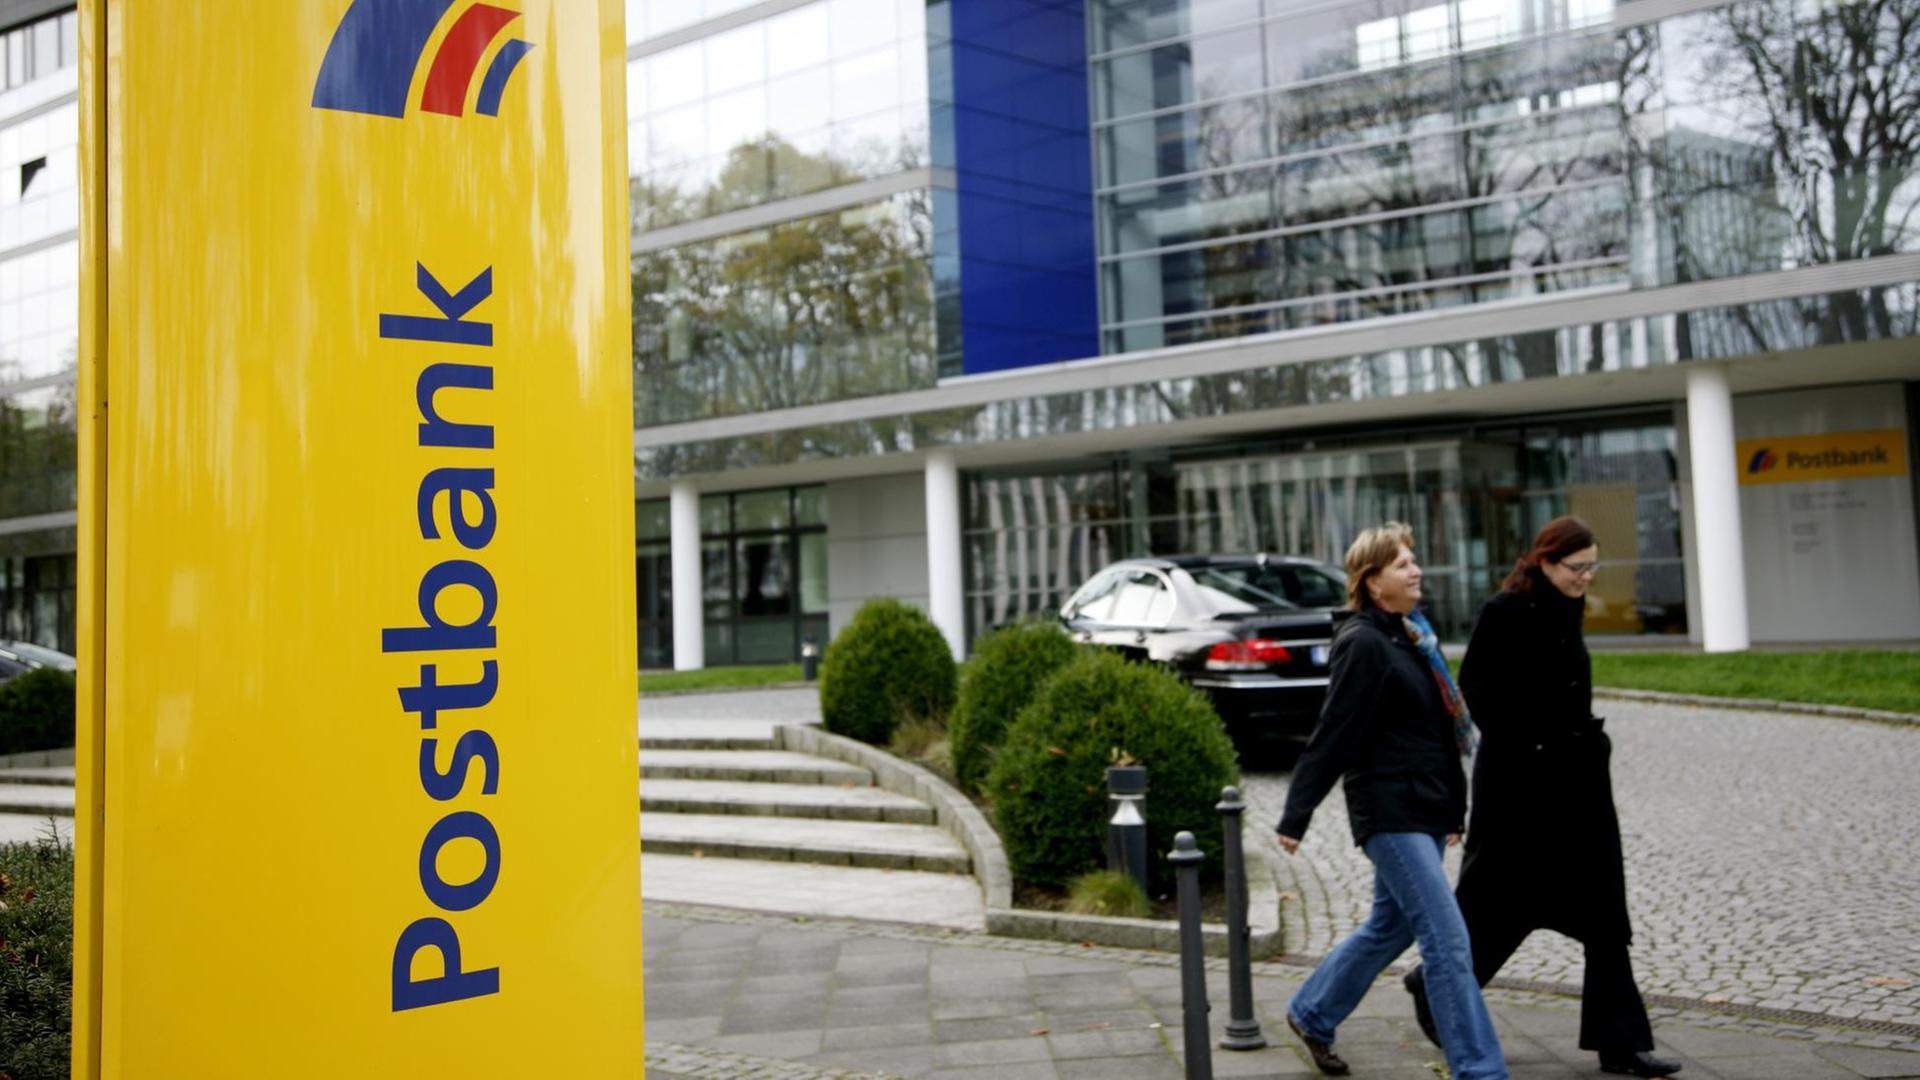 Nach Bafin-Rüge - Privatkundenchef der Postbank räumt Versäumnisse ein